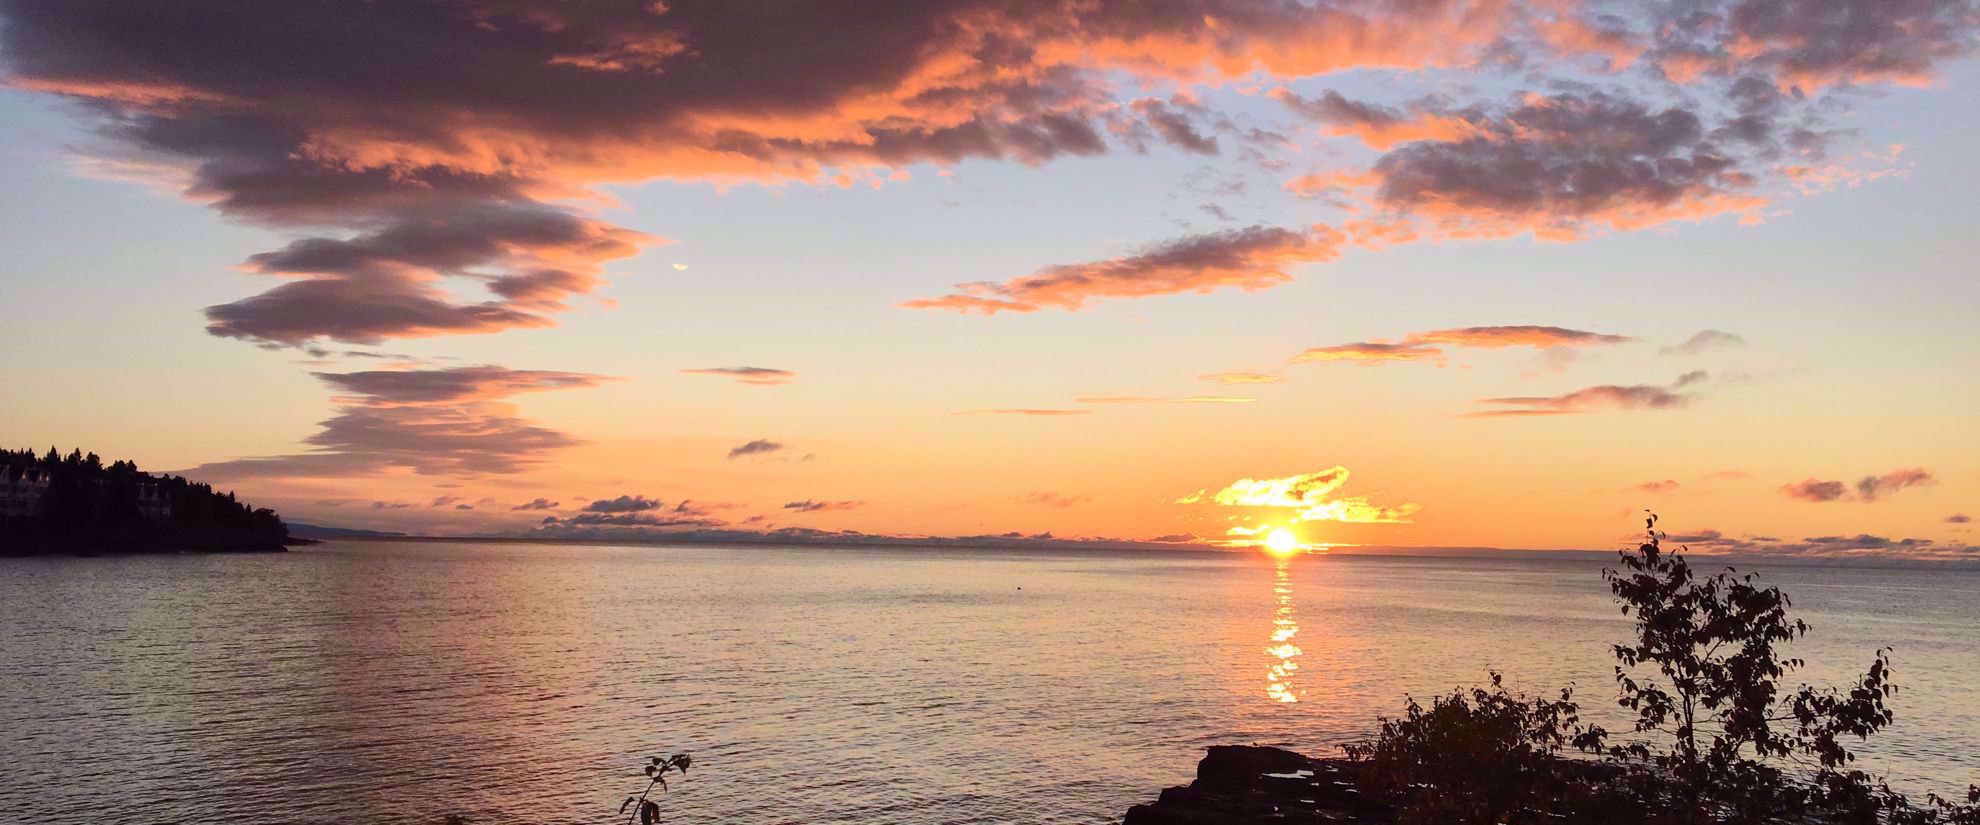 Beautiful sunset on Lake Superior